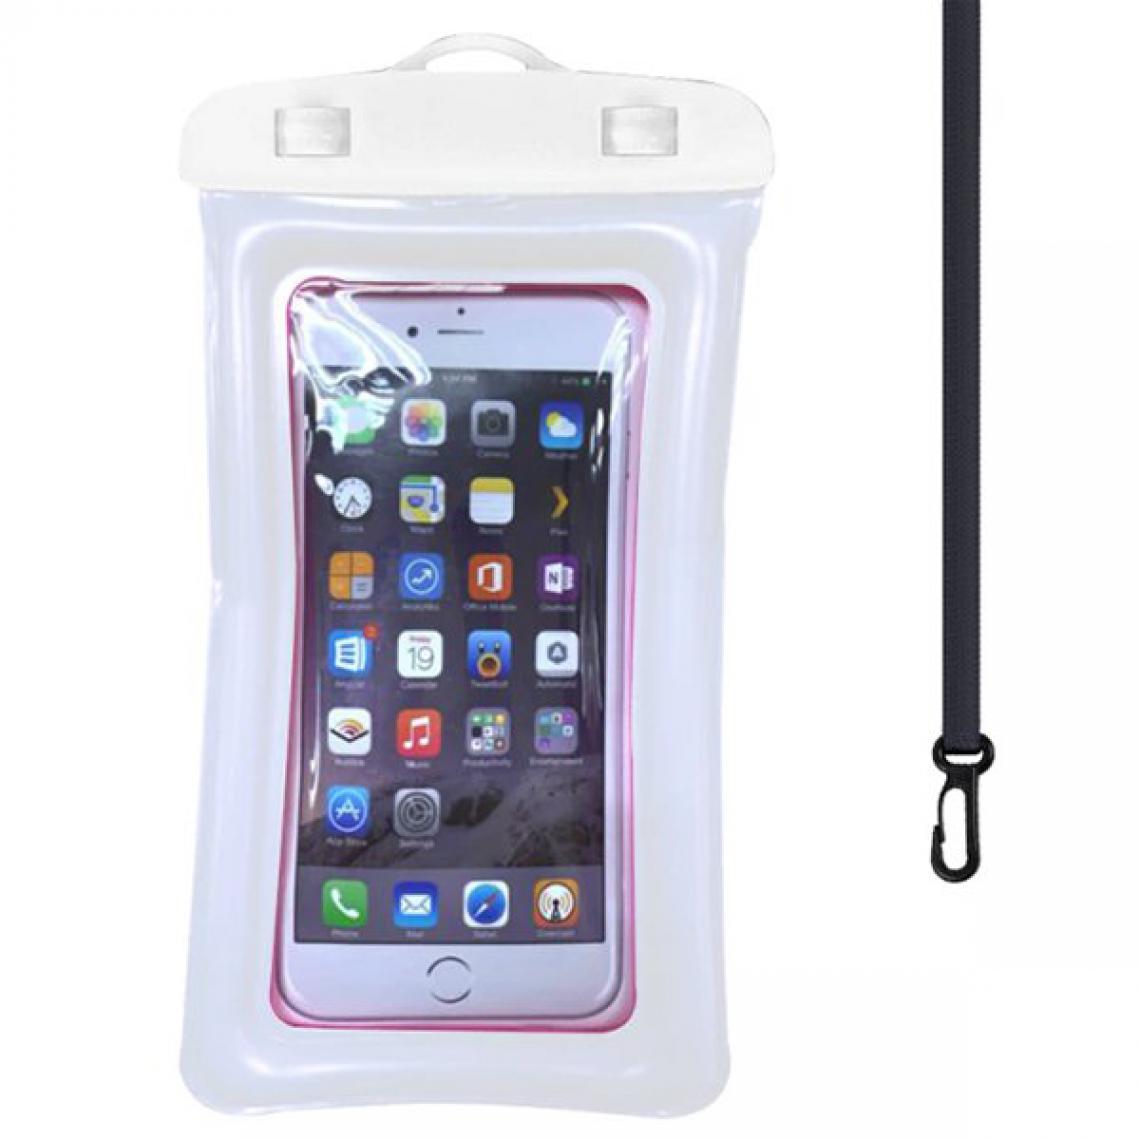 Phonecare - Coque flottante WaterprofFloating IPX8 - 6 "(Hauteur: 210 mm x Longueur: 110 mm) pour Wiko - Blanc - Coque, étui smartphone